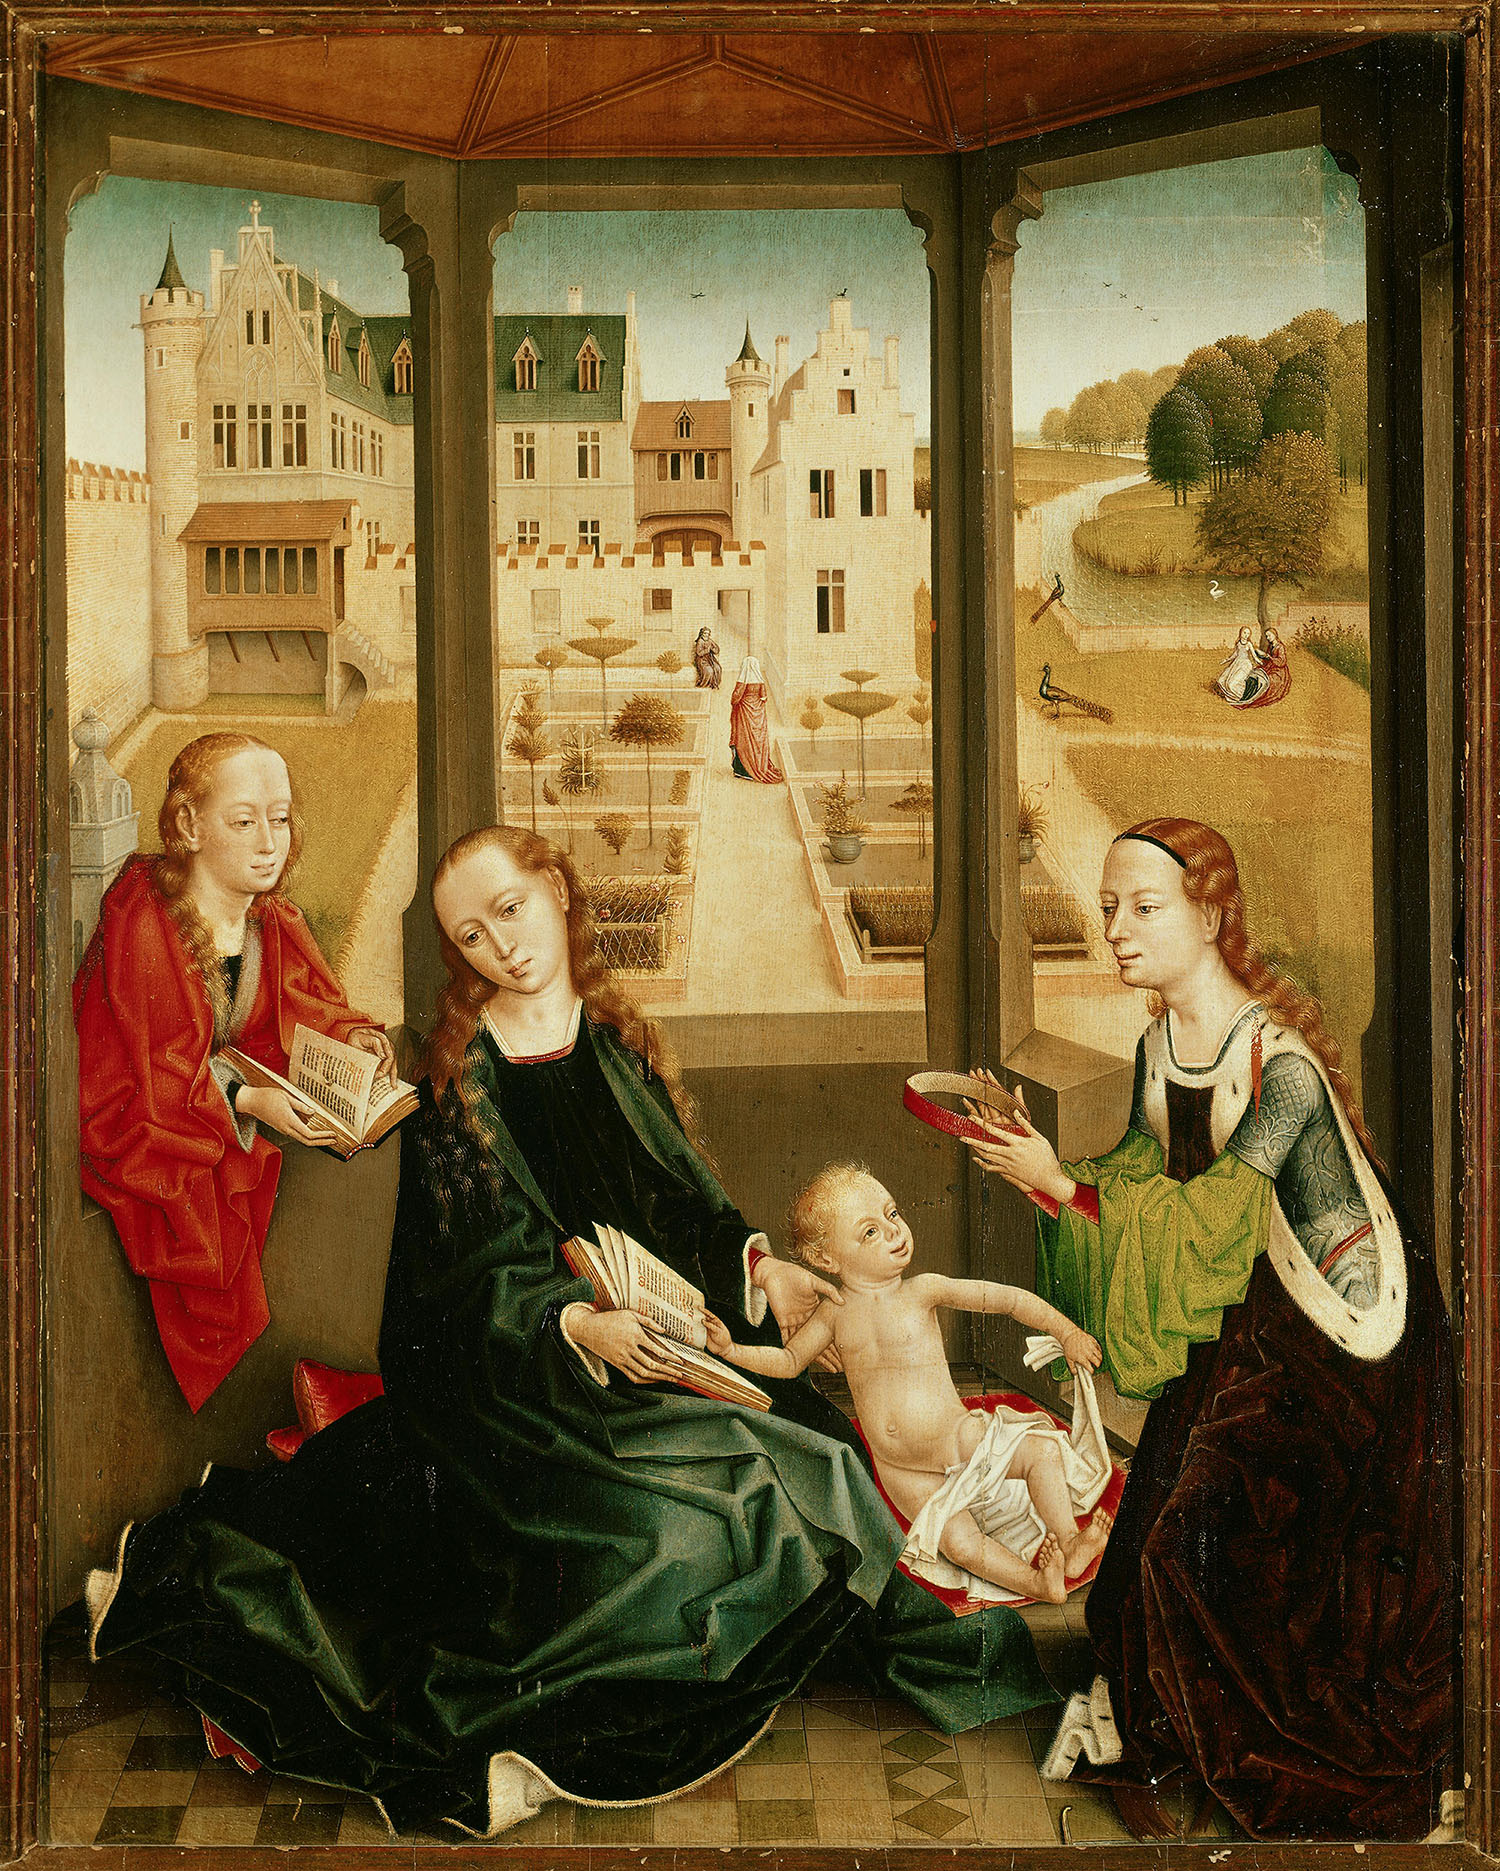 Мастер легенды о святой Екатерине. Триптих "Мадонна с Младенцем". Центральная панель. Около 1470-1500.